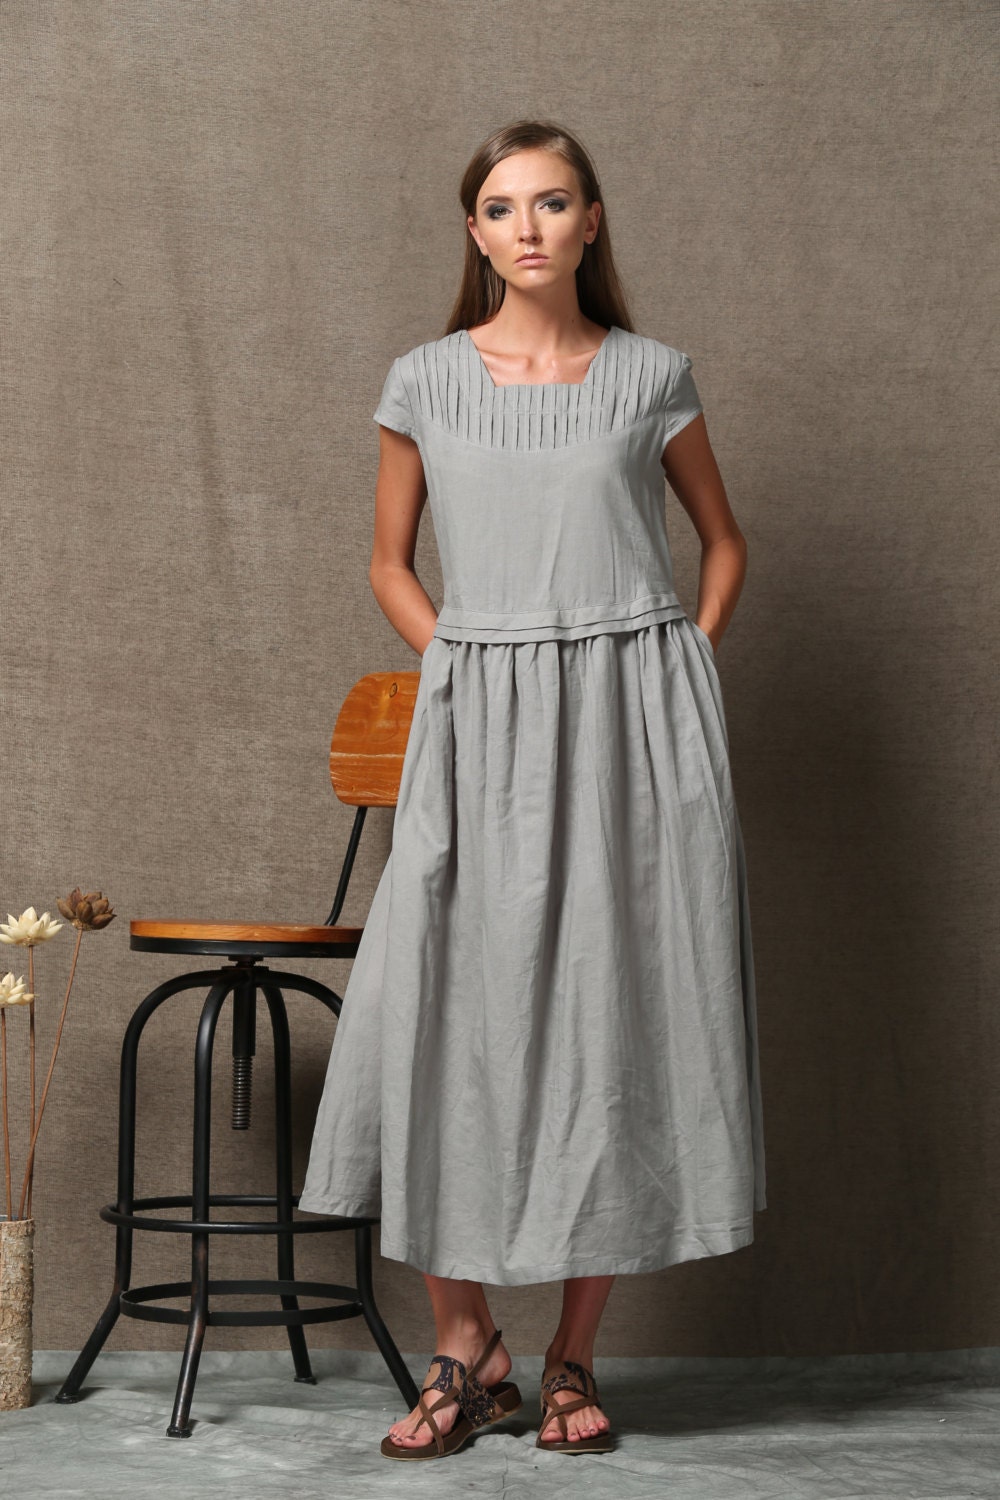 Gray Linen Dress Short Sleeved Loose-Fitting Spring Summer